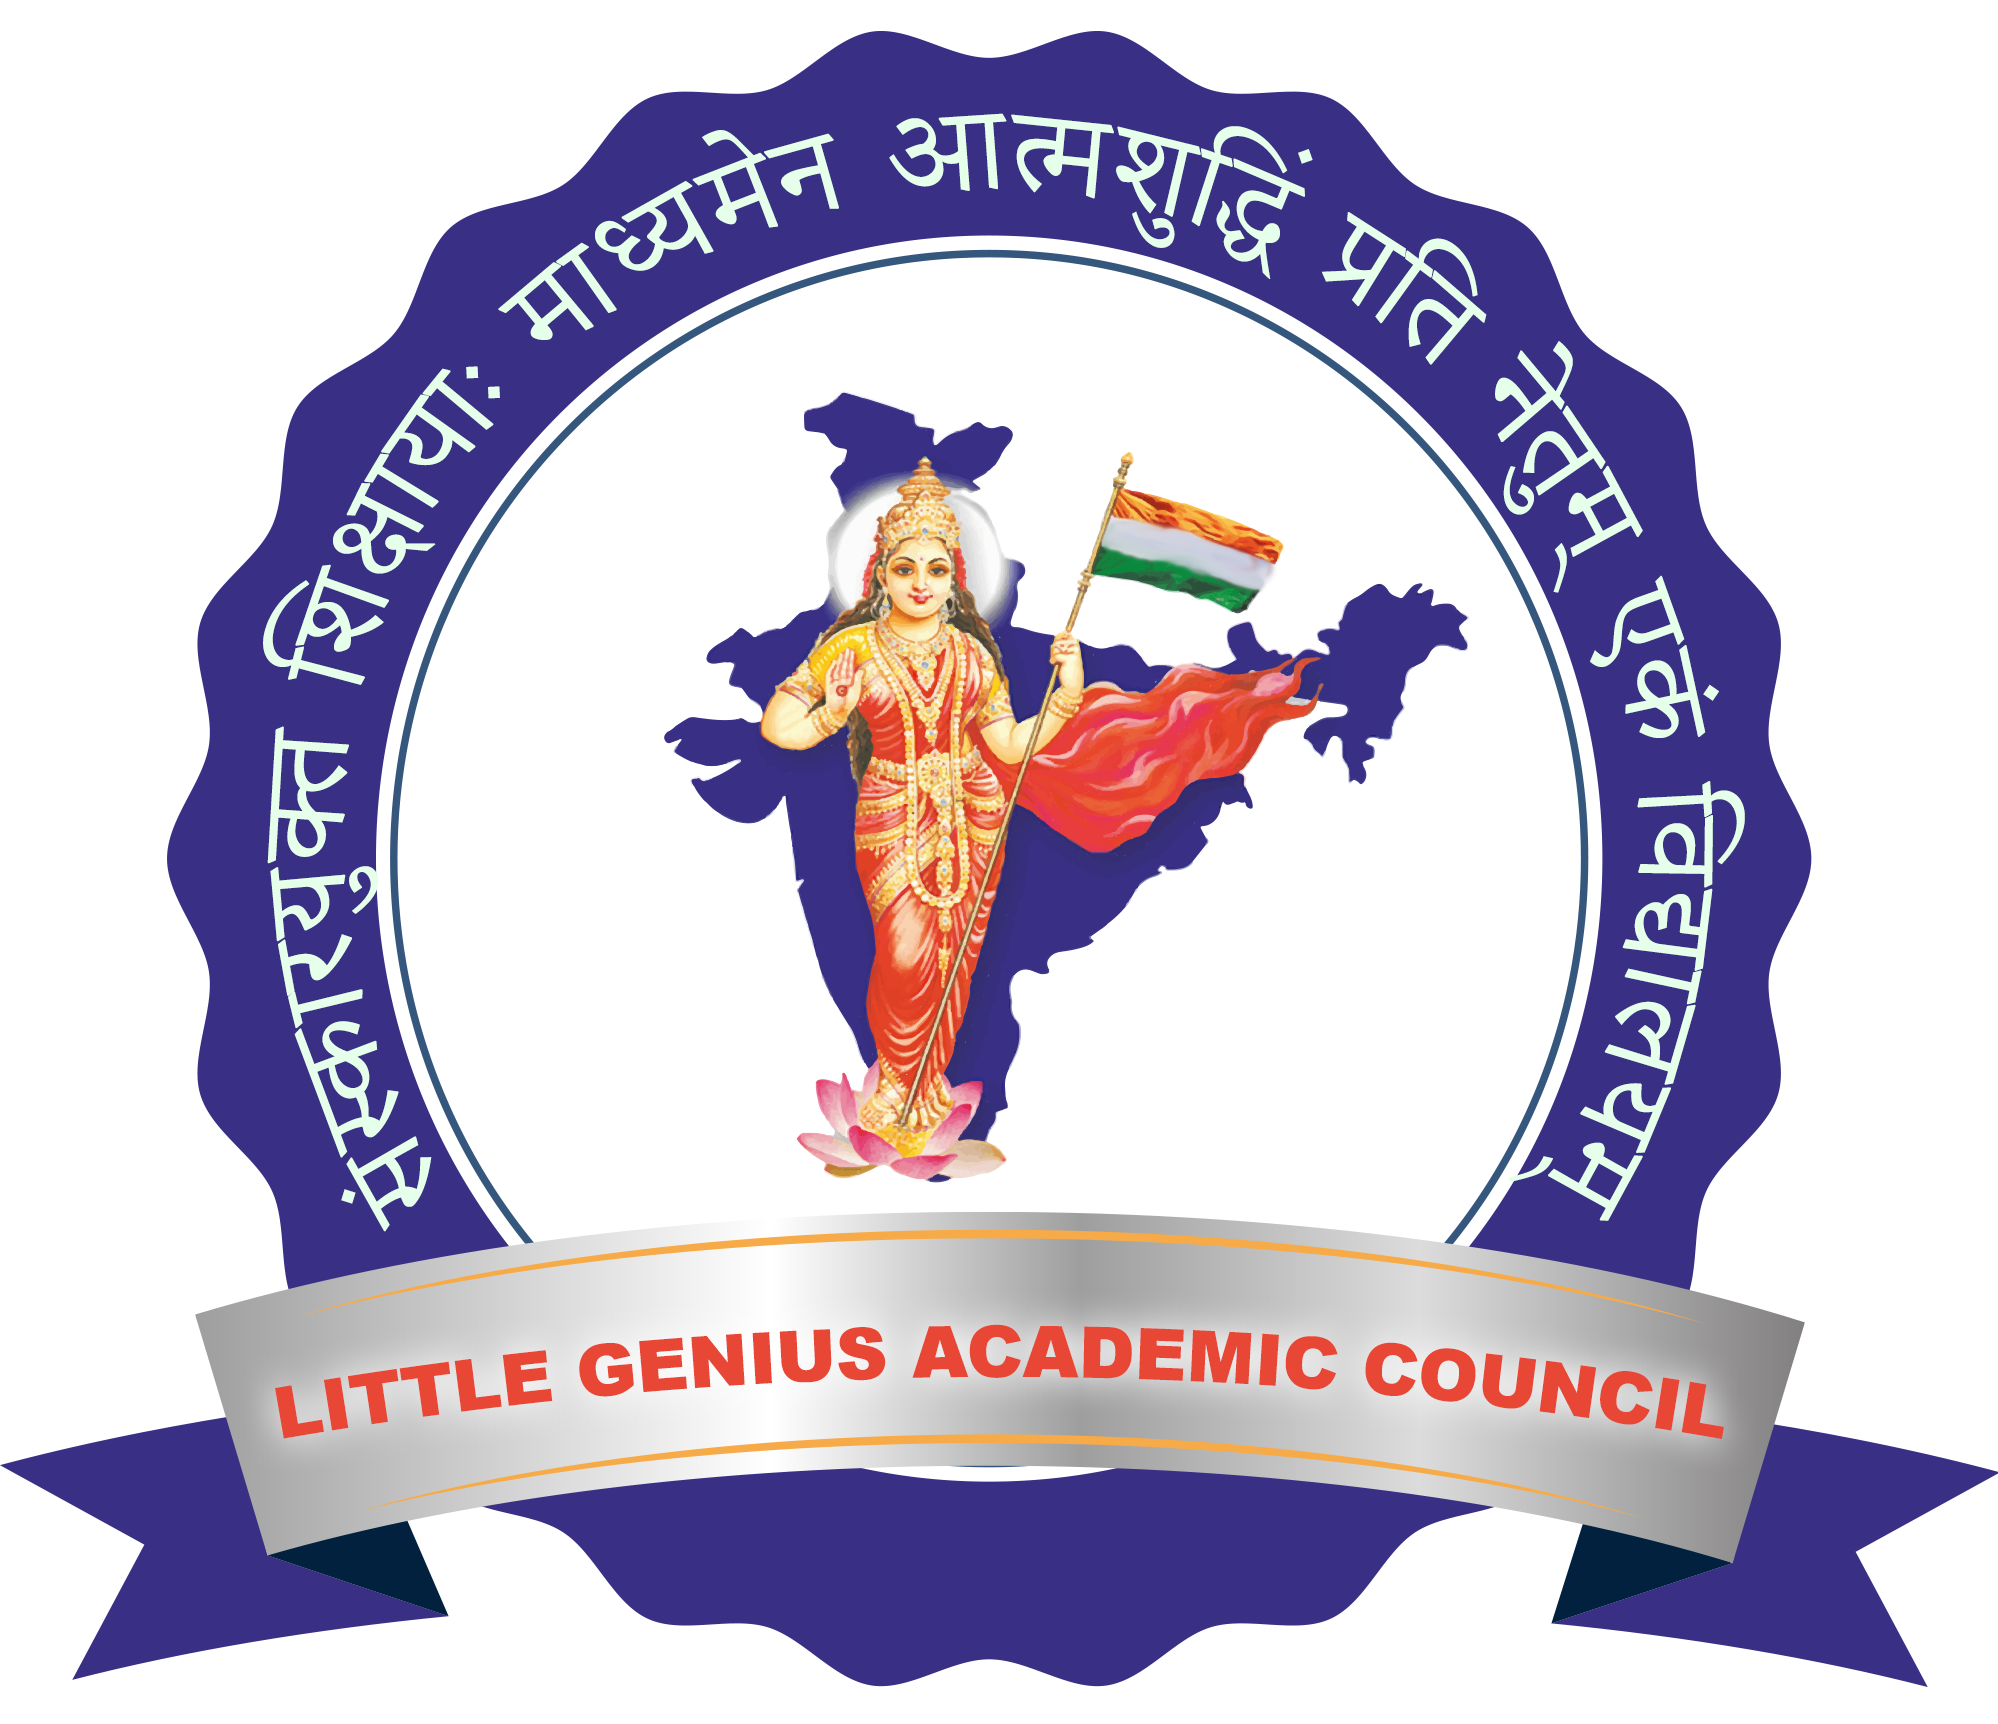 Little Genius Academic Council